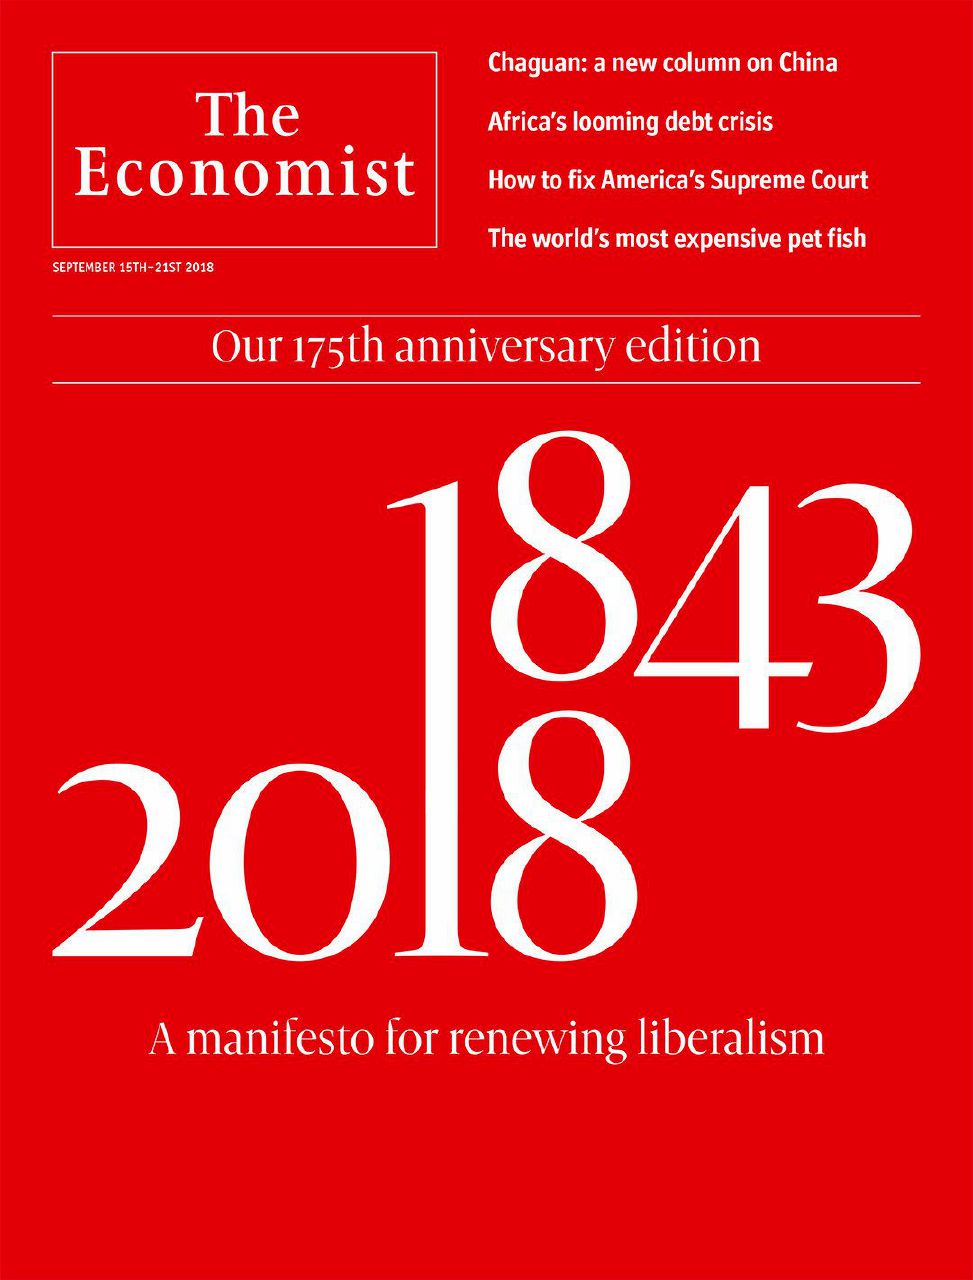 Copertina di The Economist, il manifesto per la riscossa dei liberal